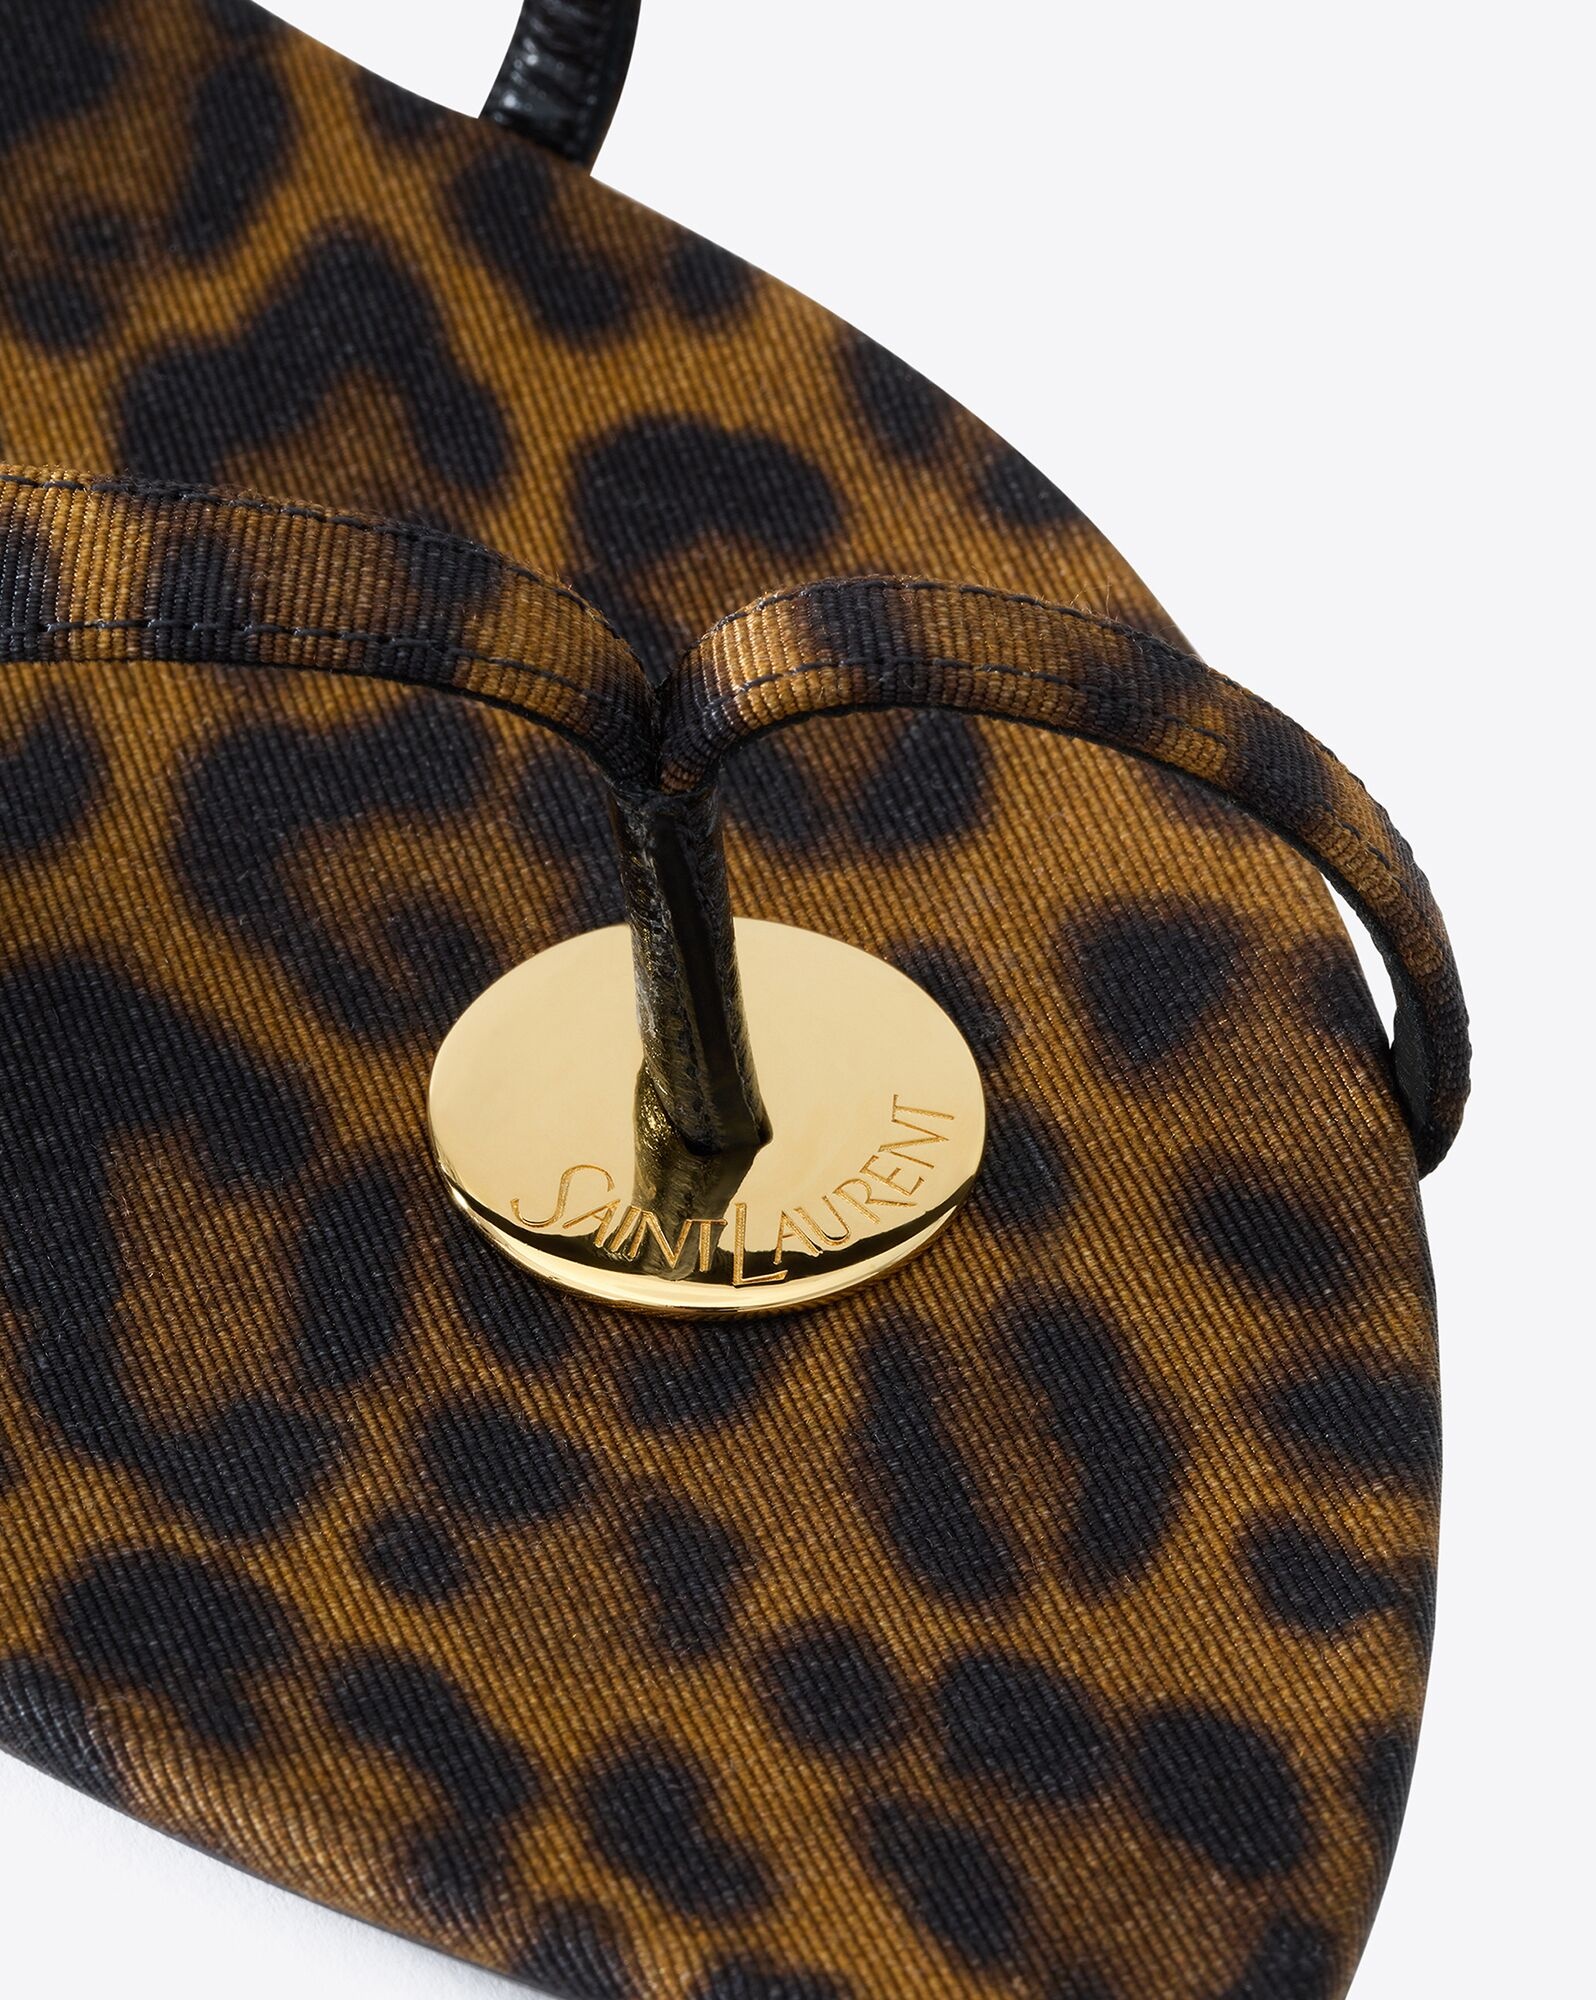 tanger slides in leopard grosgrain - 4